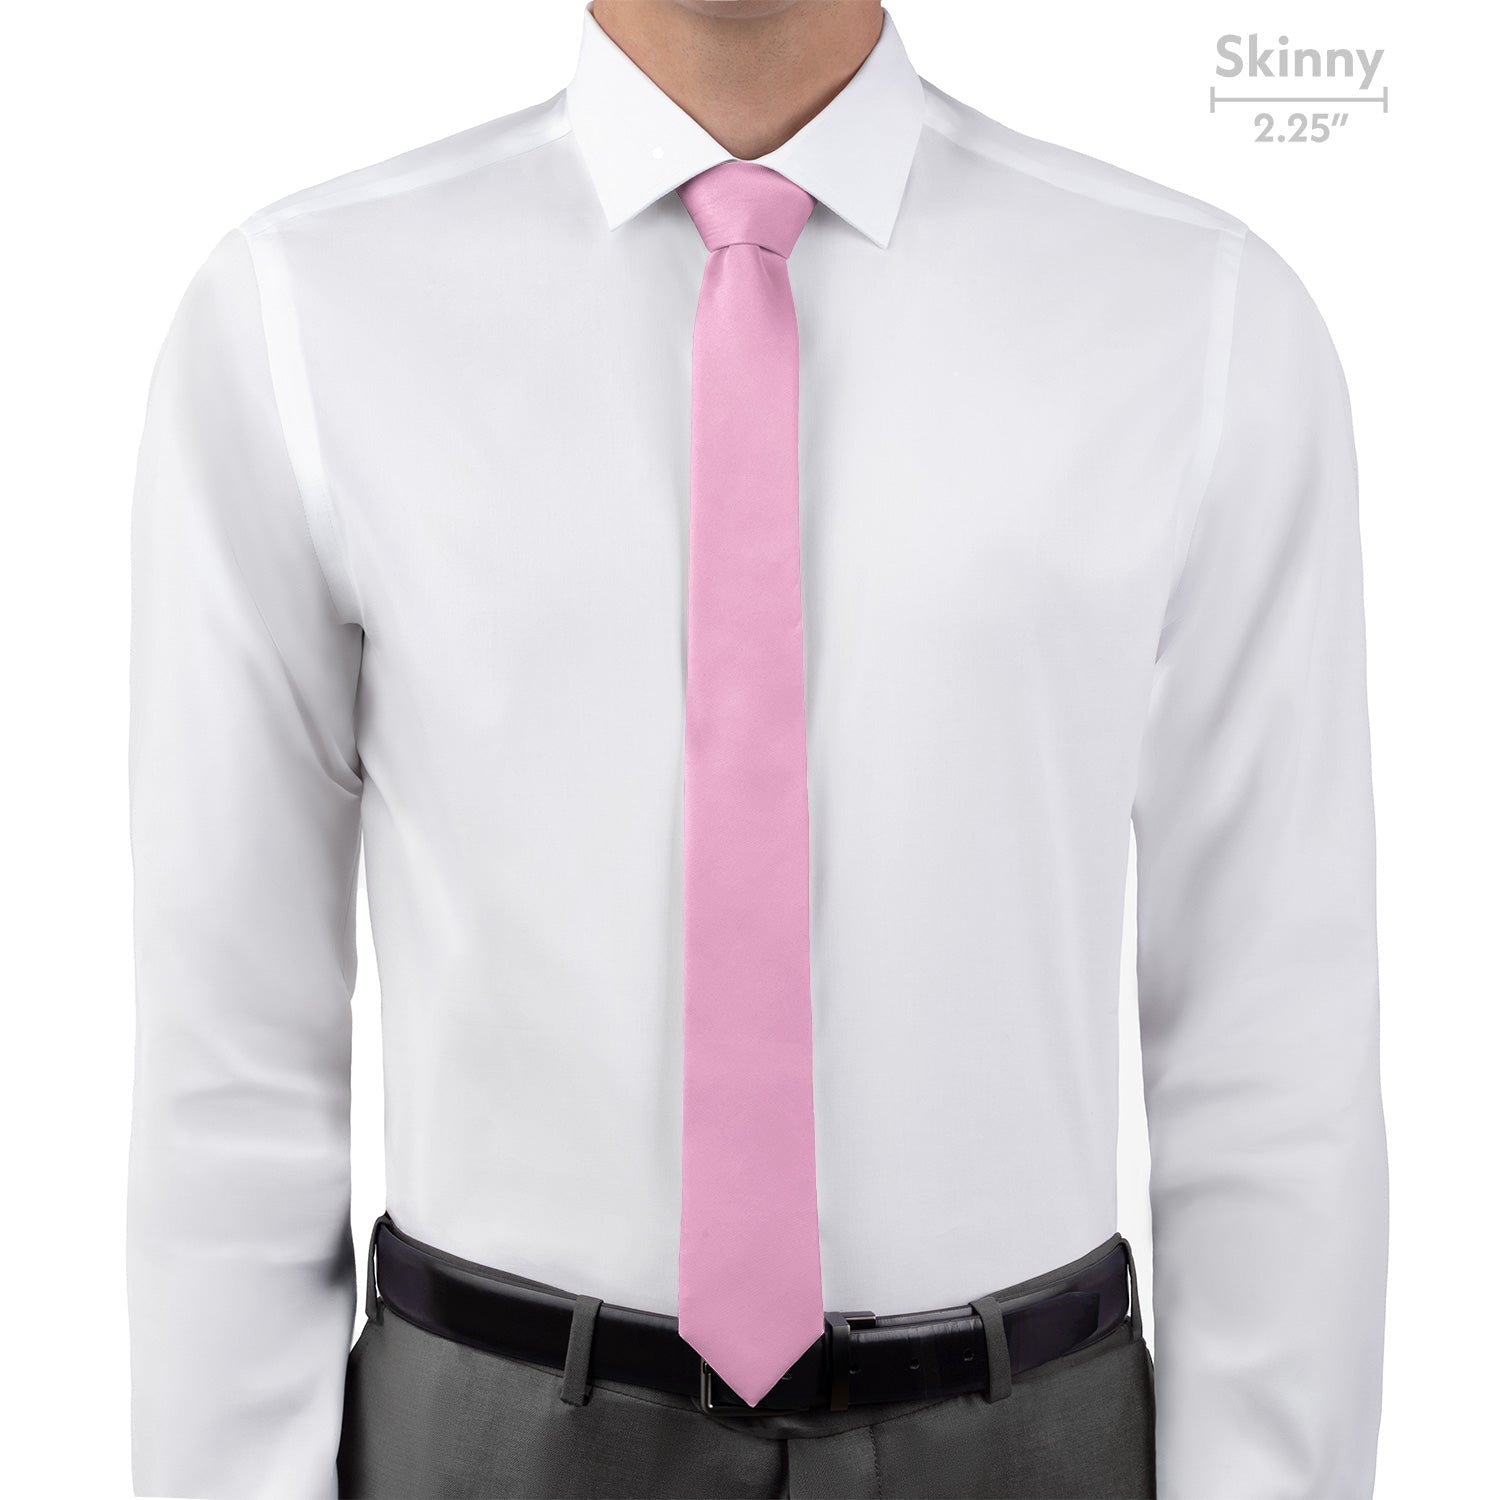 Azazie Candy Pink Necktie - Skinny 2.25" -  - Knotty Tie Co.